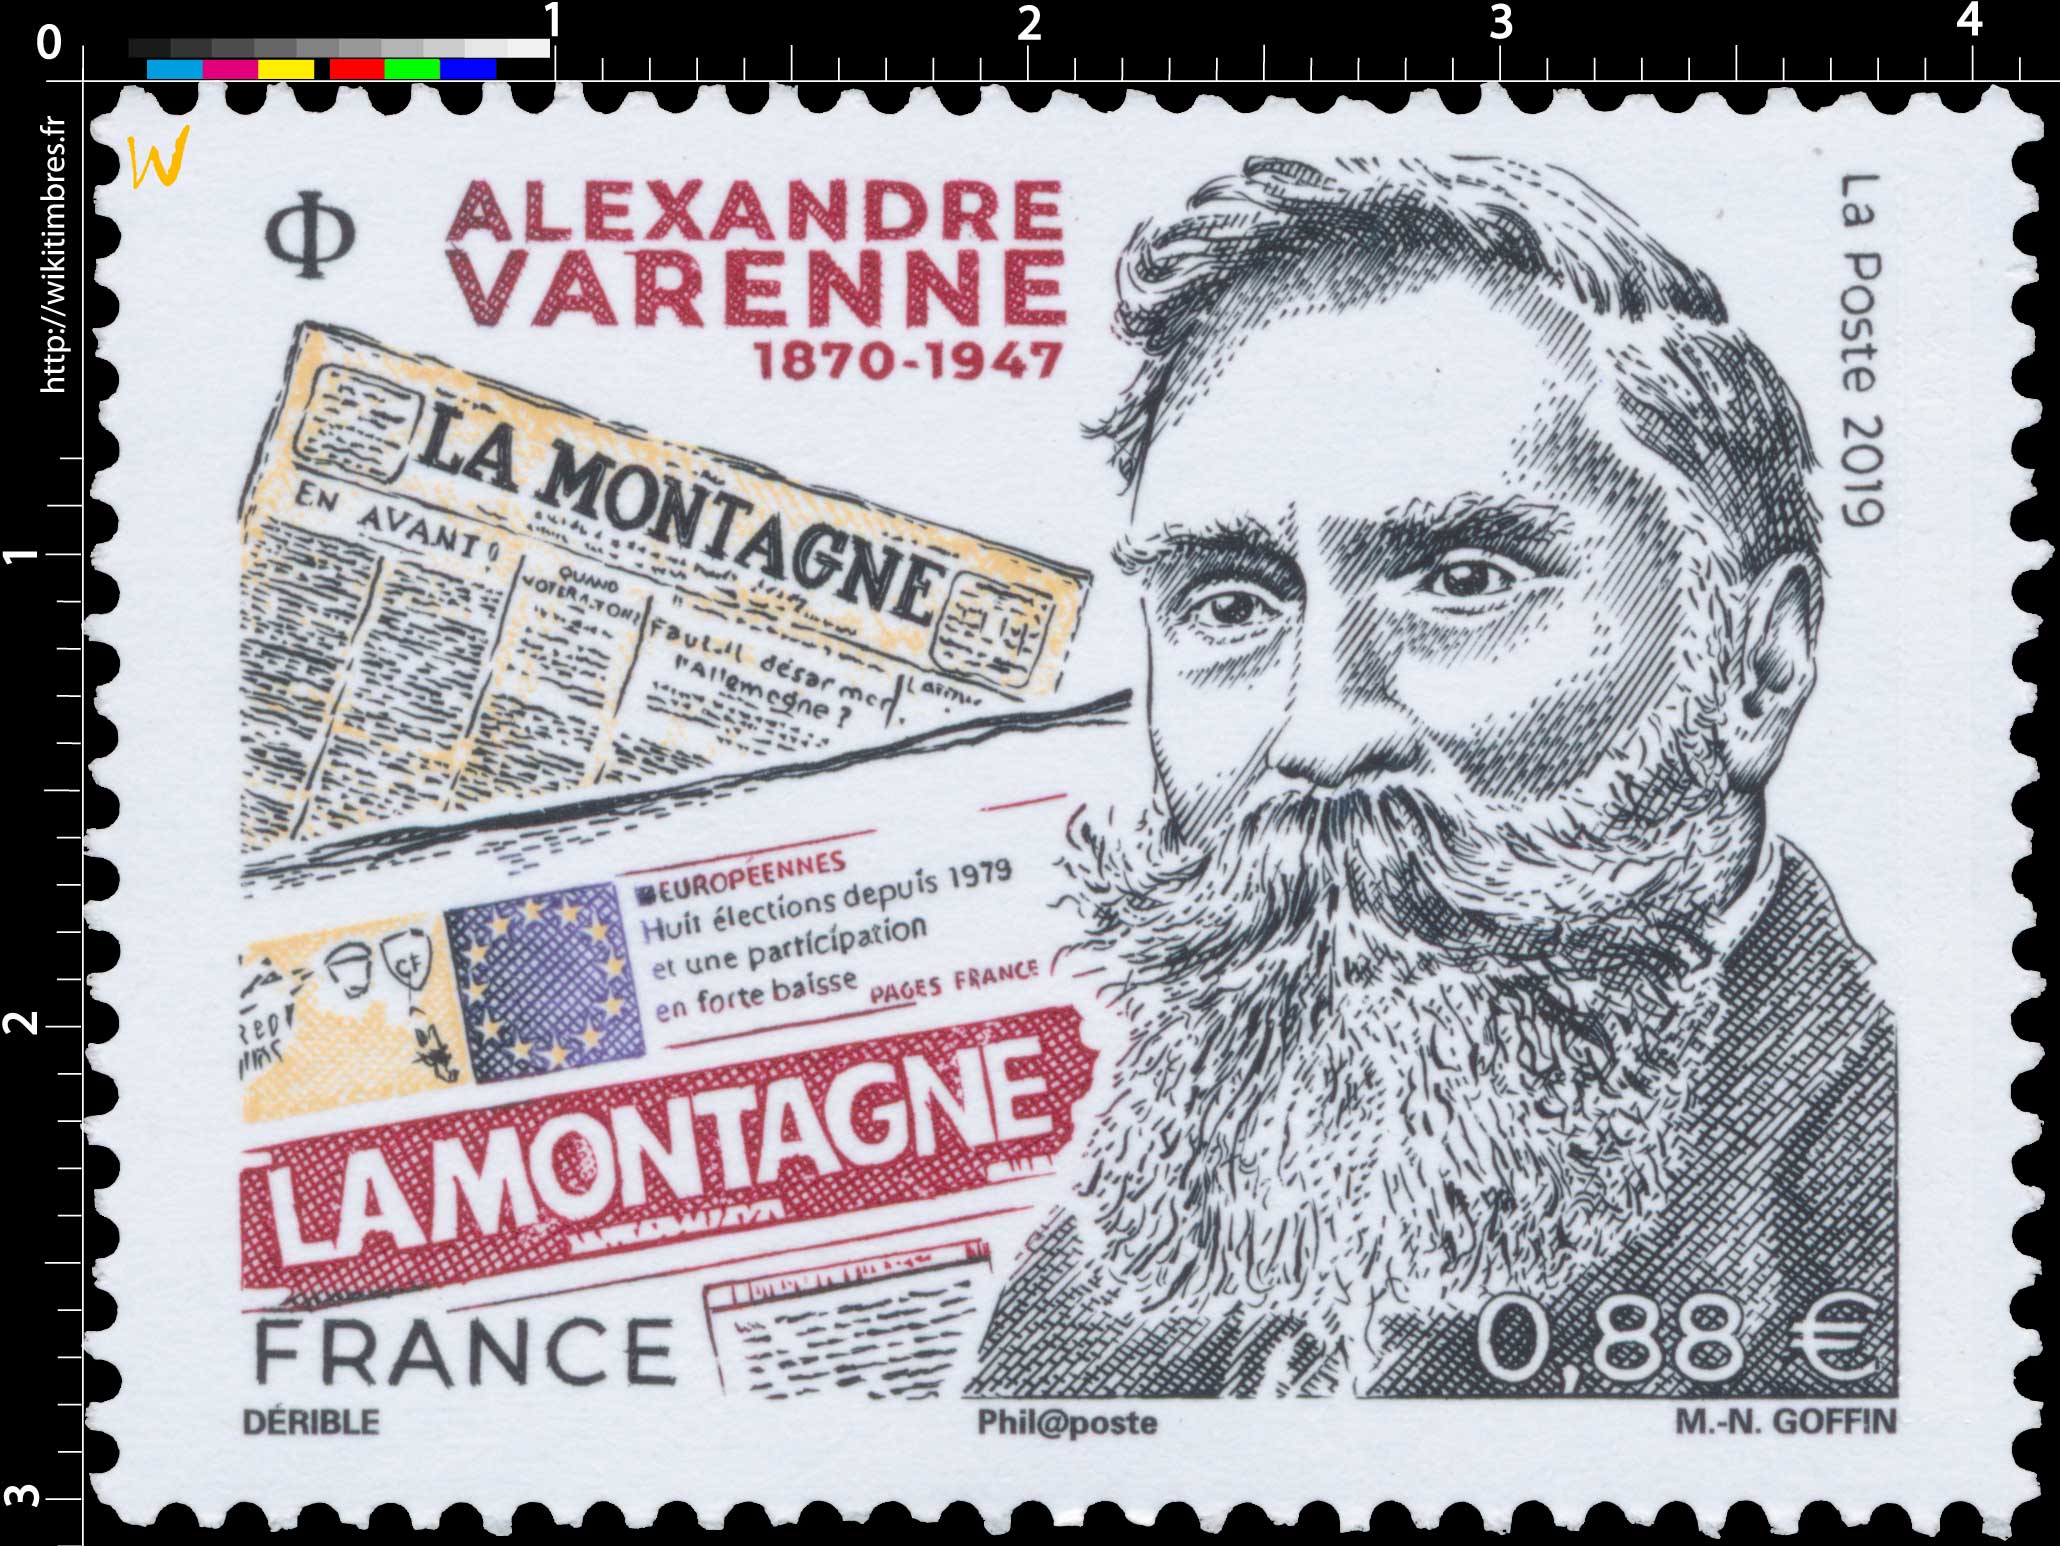 2019 ALEXANDRE VARENNE 1870-1947